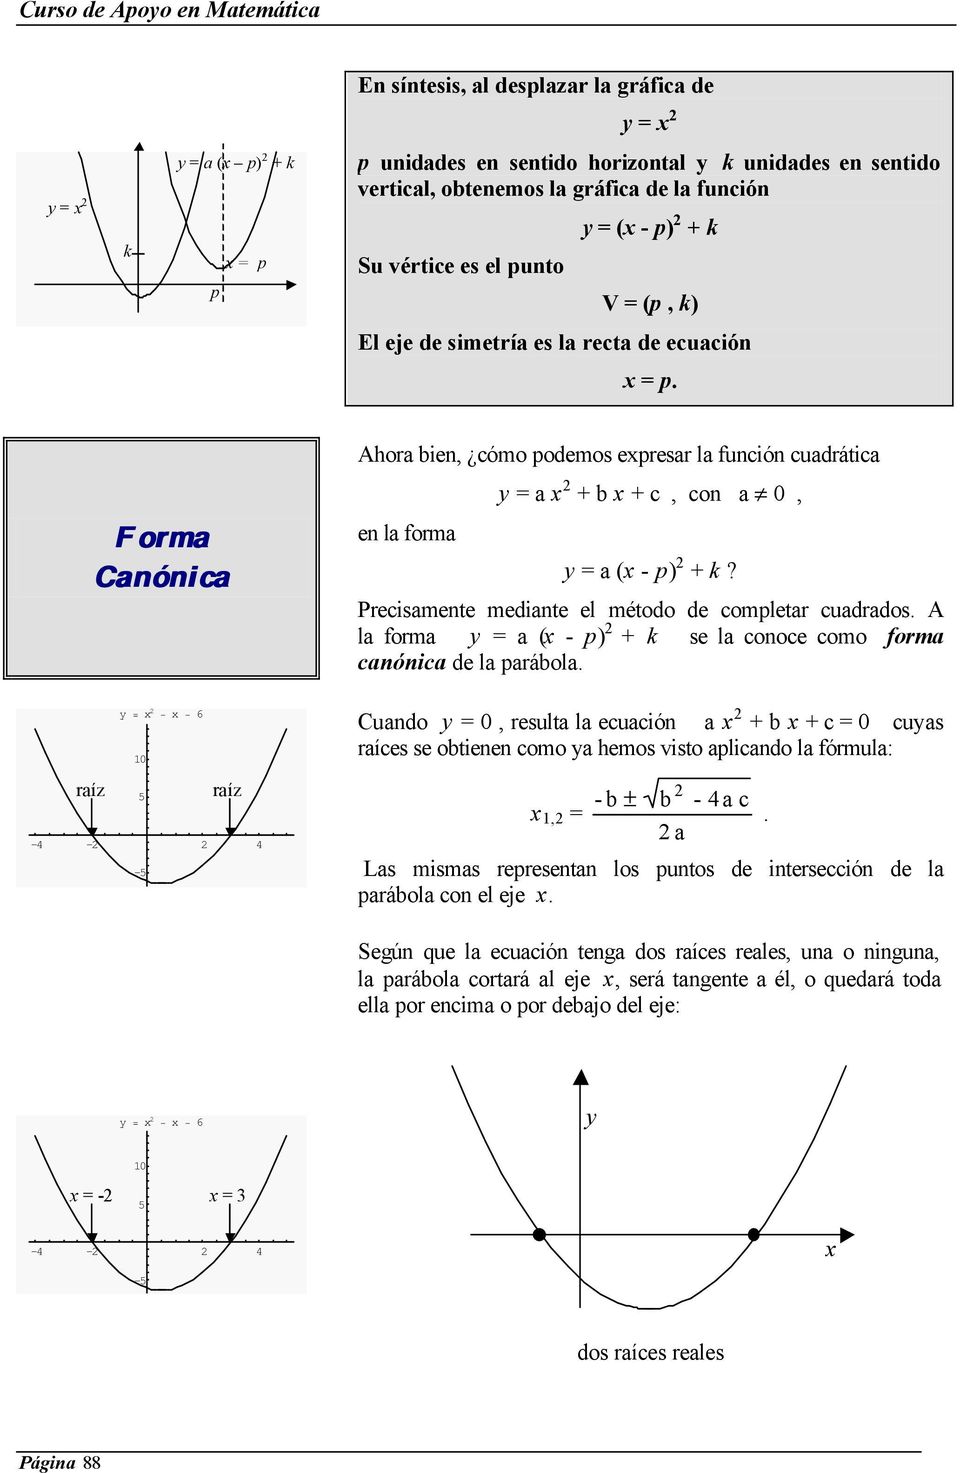 Forma Canónica Ahora bien, cómo podemos expresar la función cuadrática en la forma y = a x + b x + c, con a 0, y = a (x - p) + k? Precisamente mediante el método de completar cuadrados.